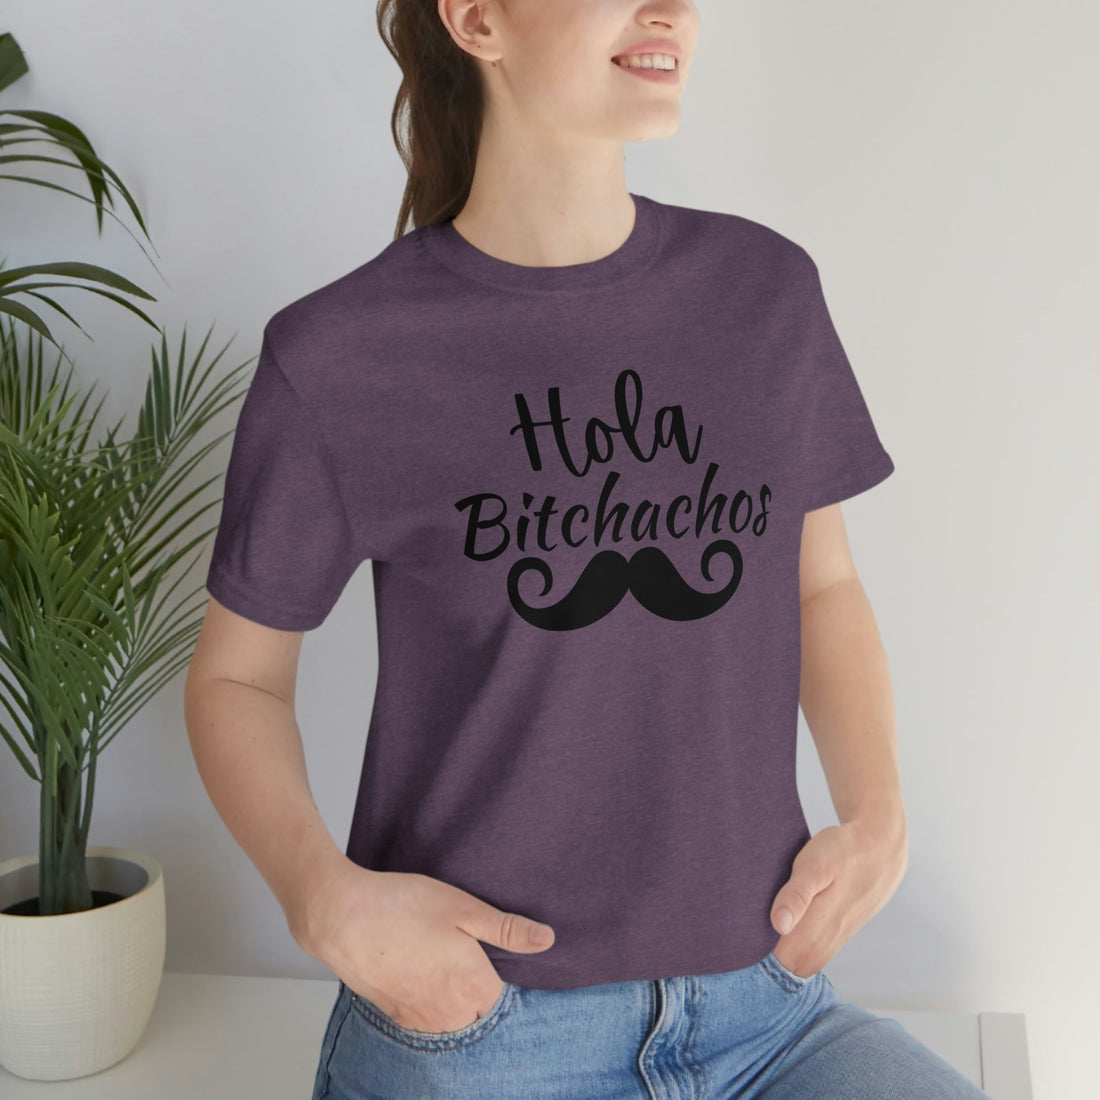 Hola Bitchachos - T-Shirt - Positively Sassy - Hola Bitchachos